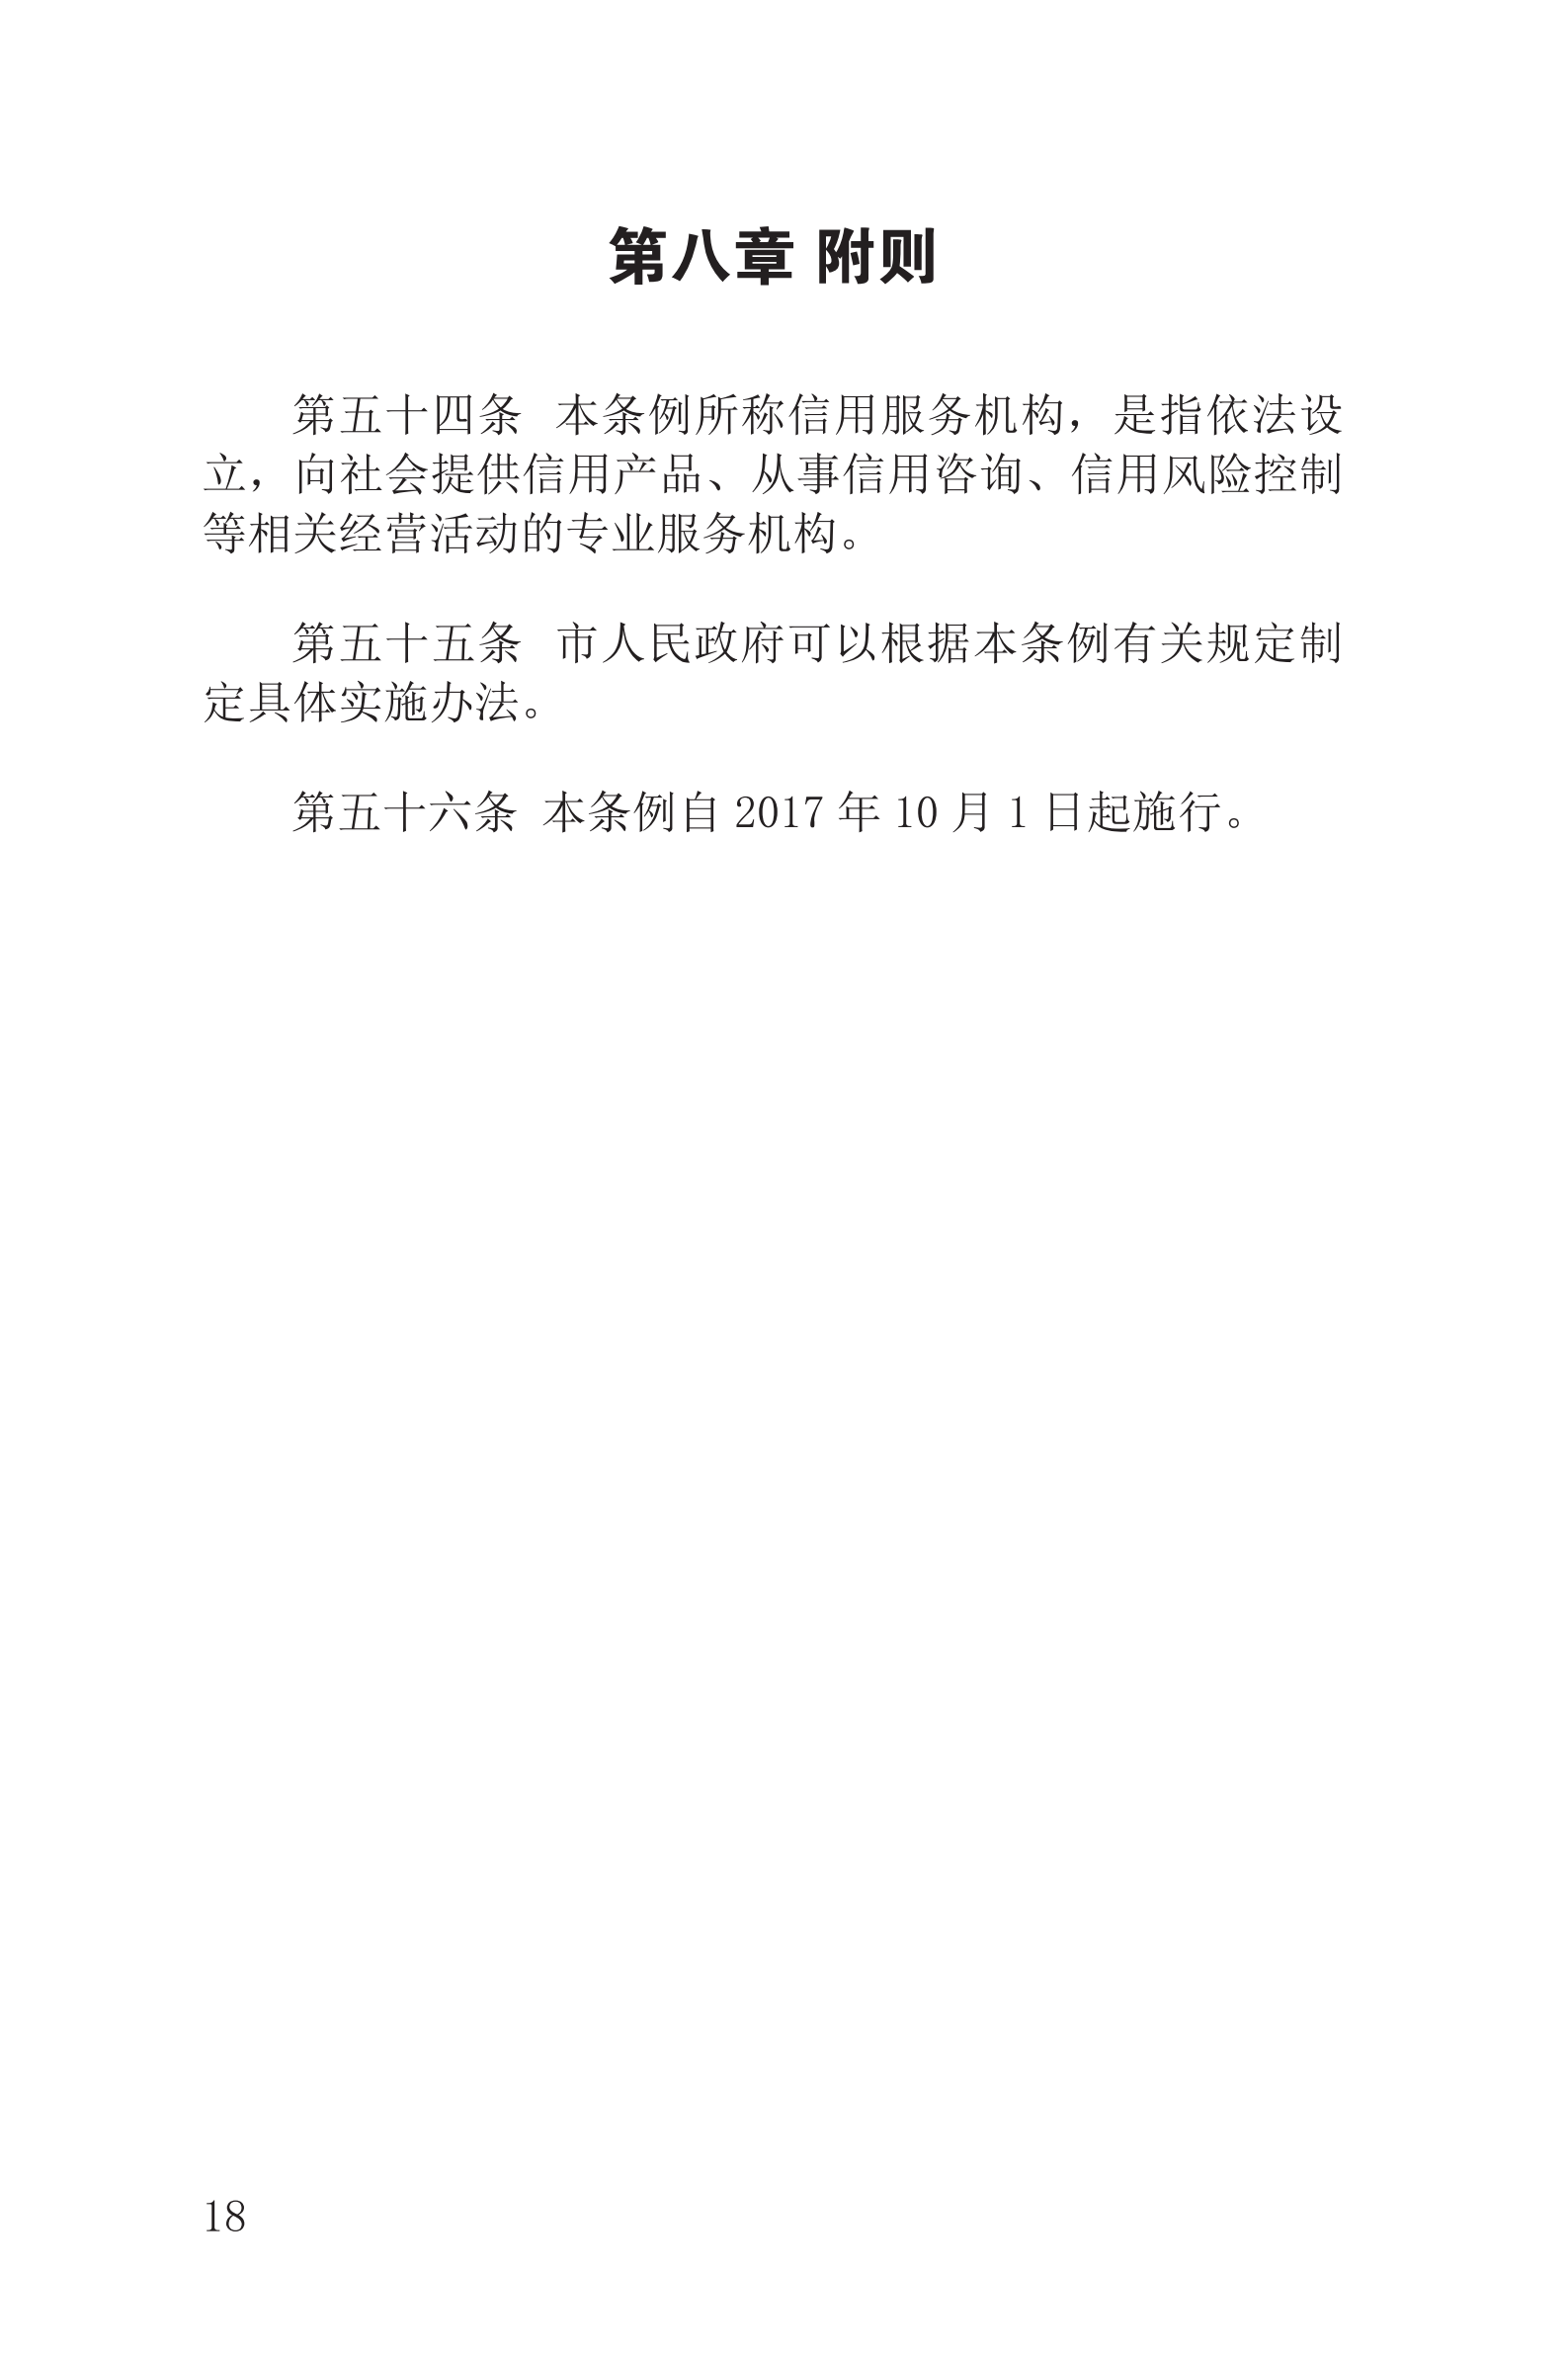 上海市社会信用条例_19.png